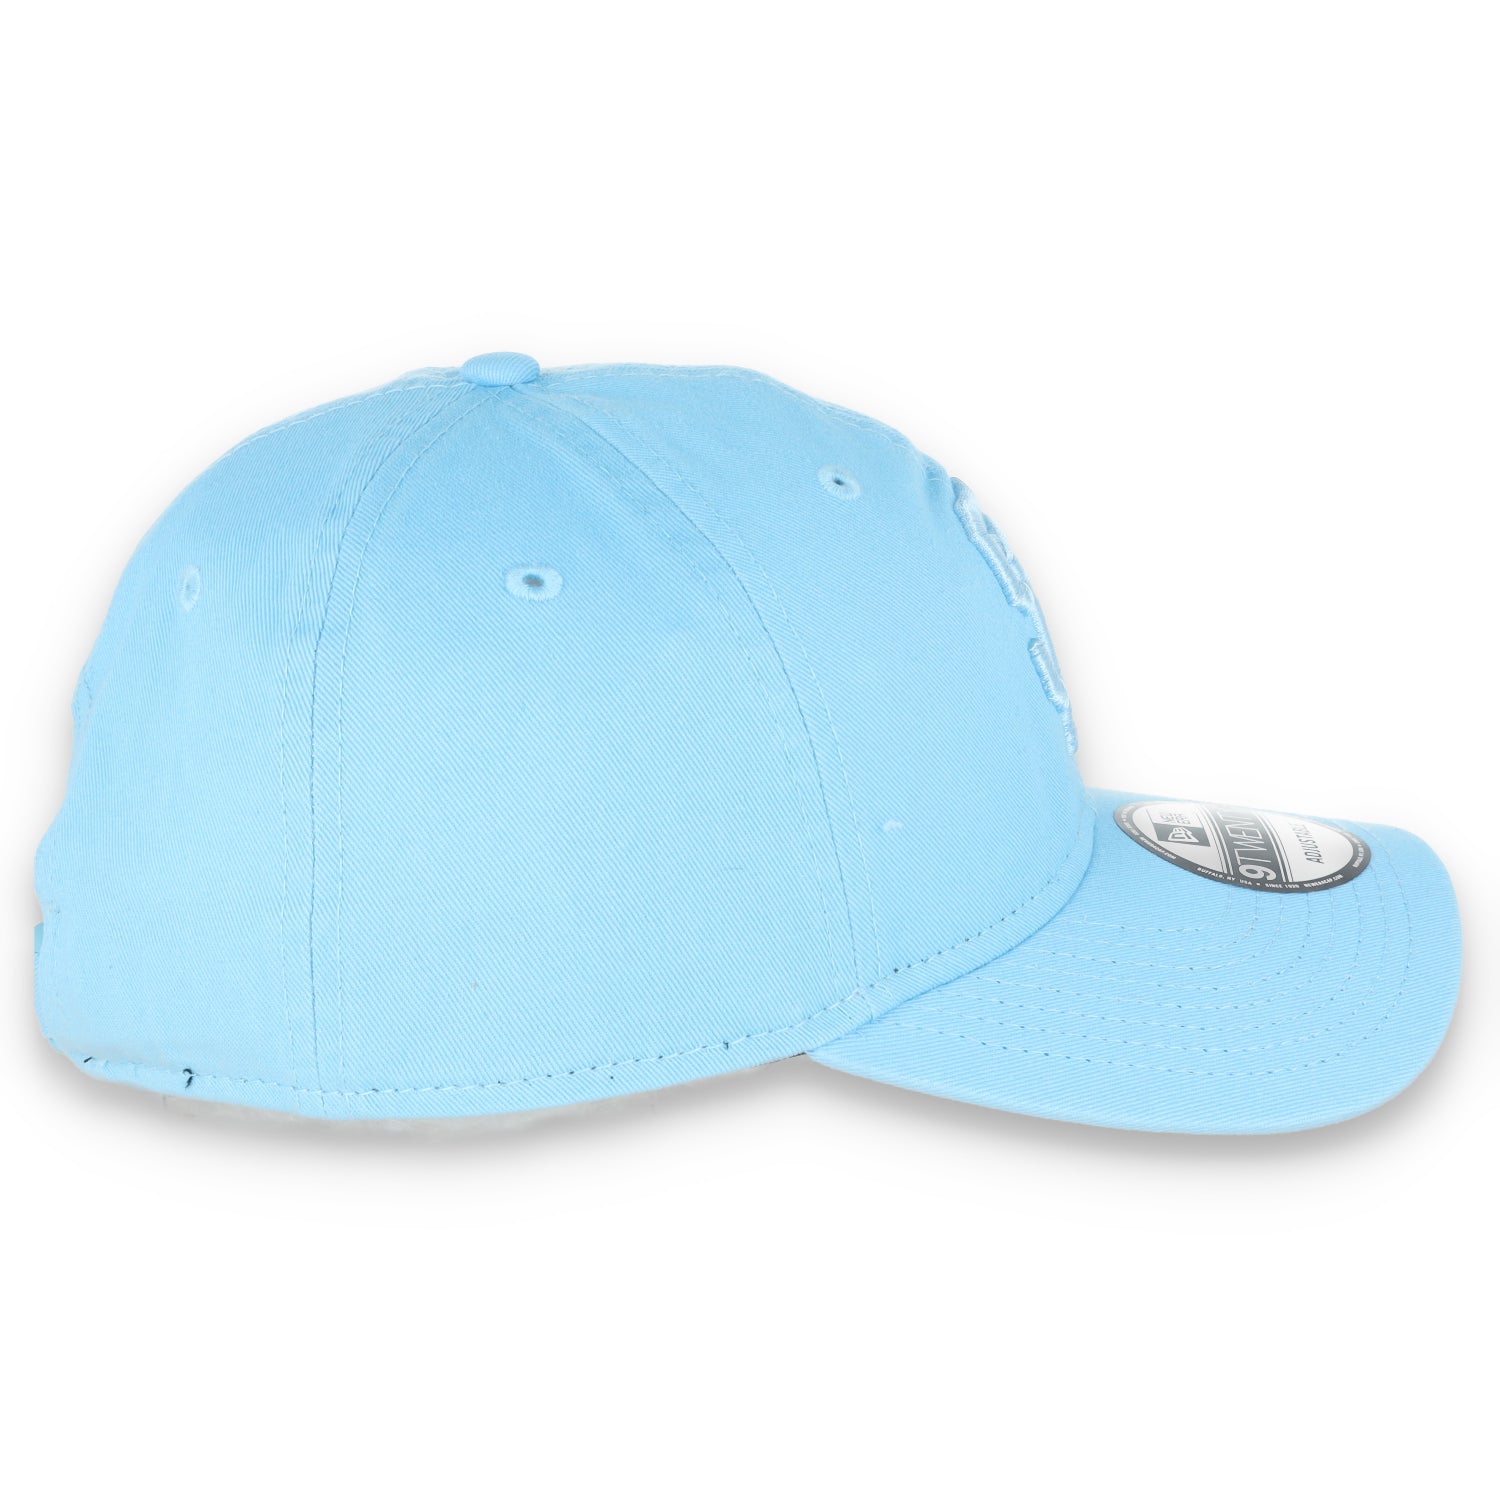 New Era San Francisco Giants Color Pack 9TWENTY Adjustable Hat- Baby Blue